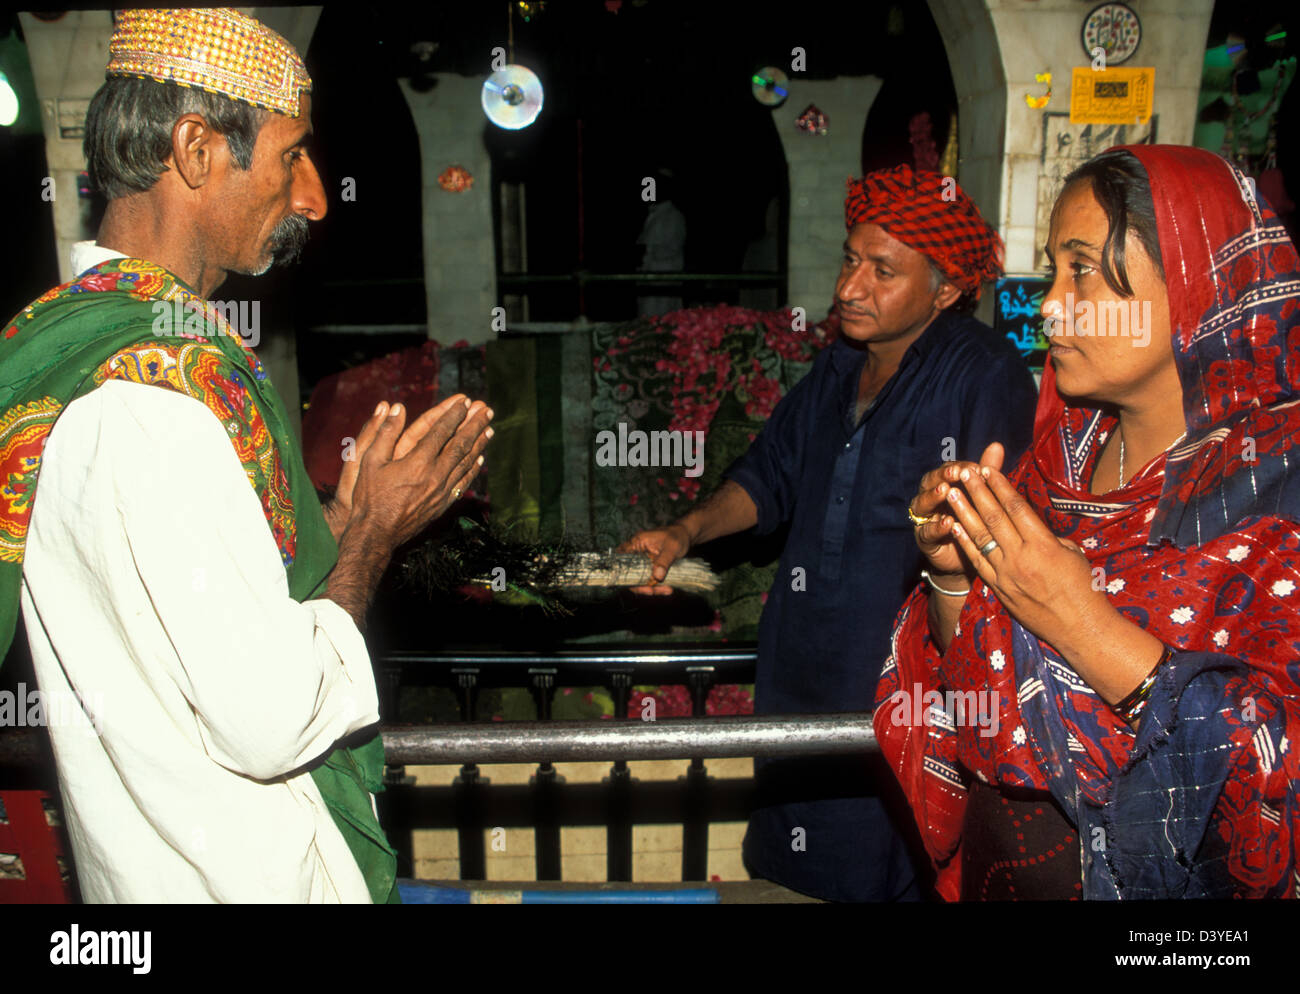 Un homme et une femme visitant le célèbre sanctuaire de Chabaz Qalander dédié au XIIIe siècle [mystique chiite], Lal Shahbaz Qalandar. Le sanctuaire est situé à Sehwan Sharif, au Pakistan. Banque D'Images